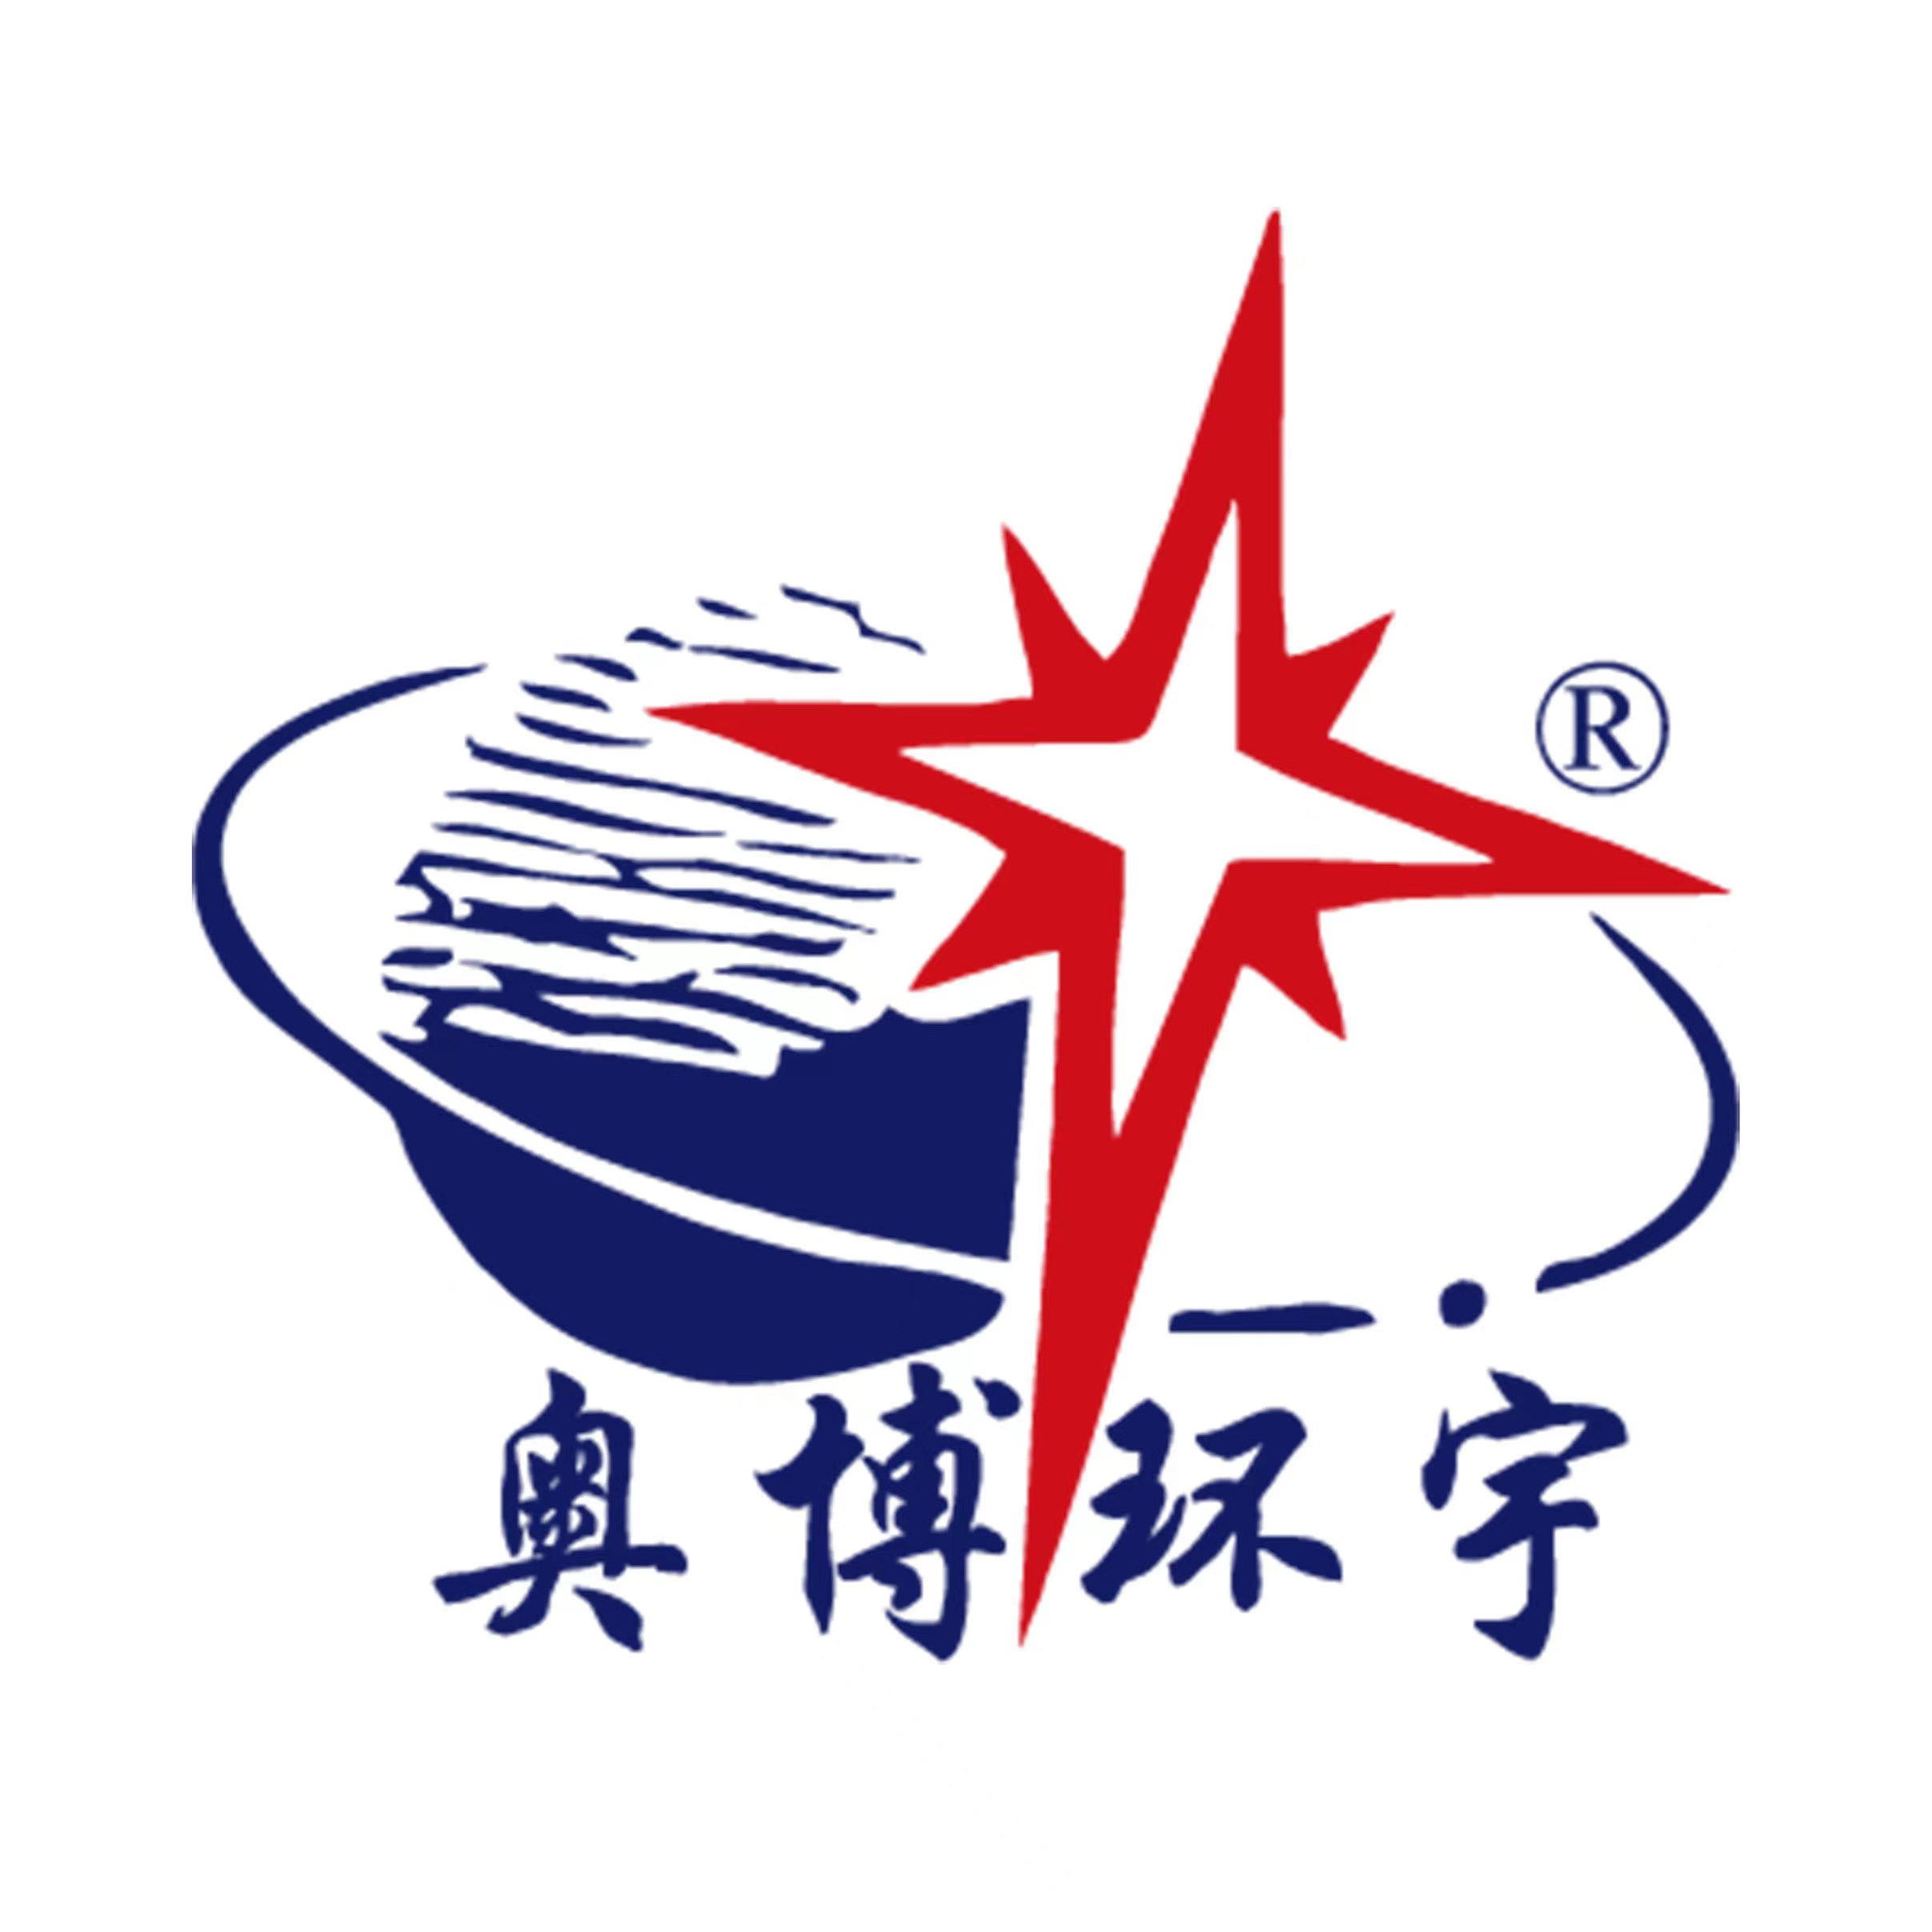 奥博logo.jpg